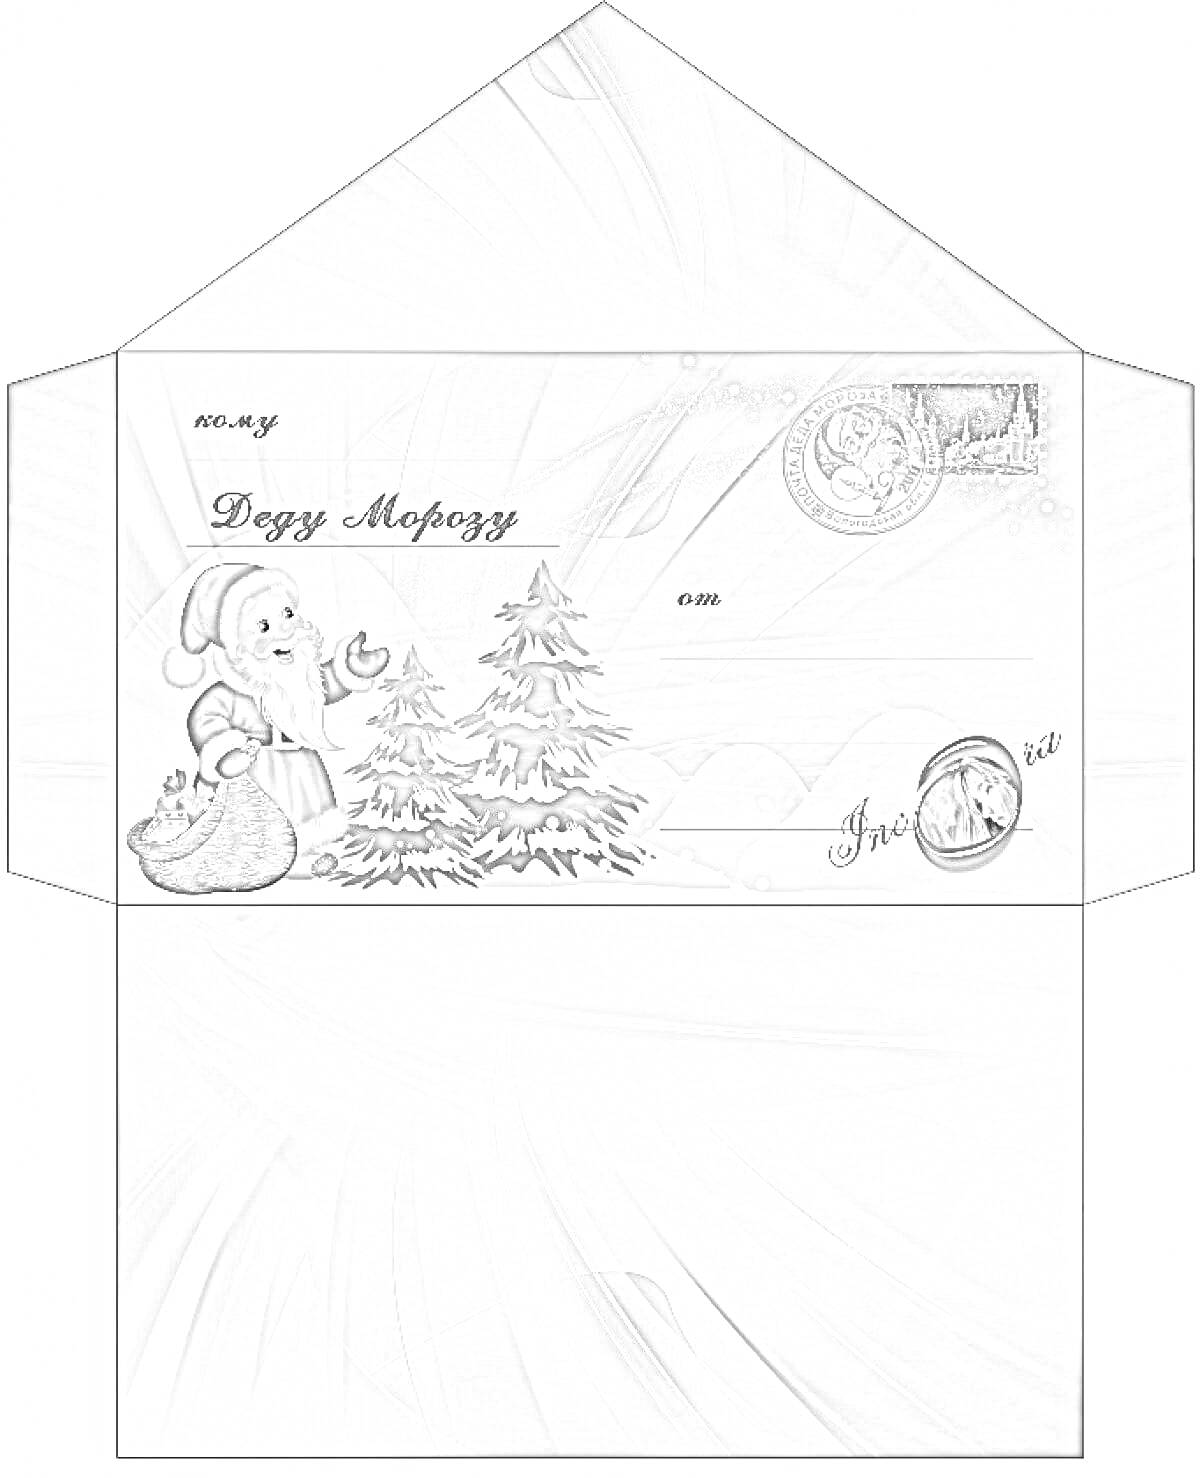 Конверт для письма Деду Морозу с изображением Деда Мороза, ёлок, мешка с подарками, зимнего пейзажа и новогодними элементами на синем фоне